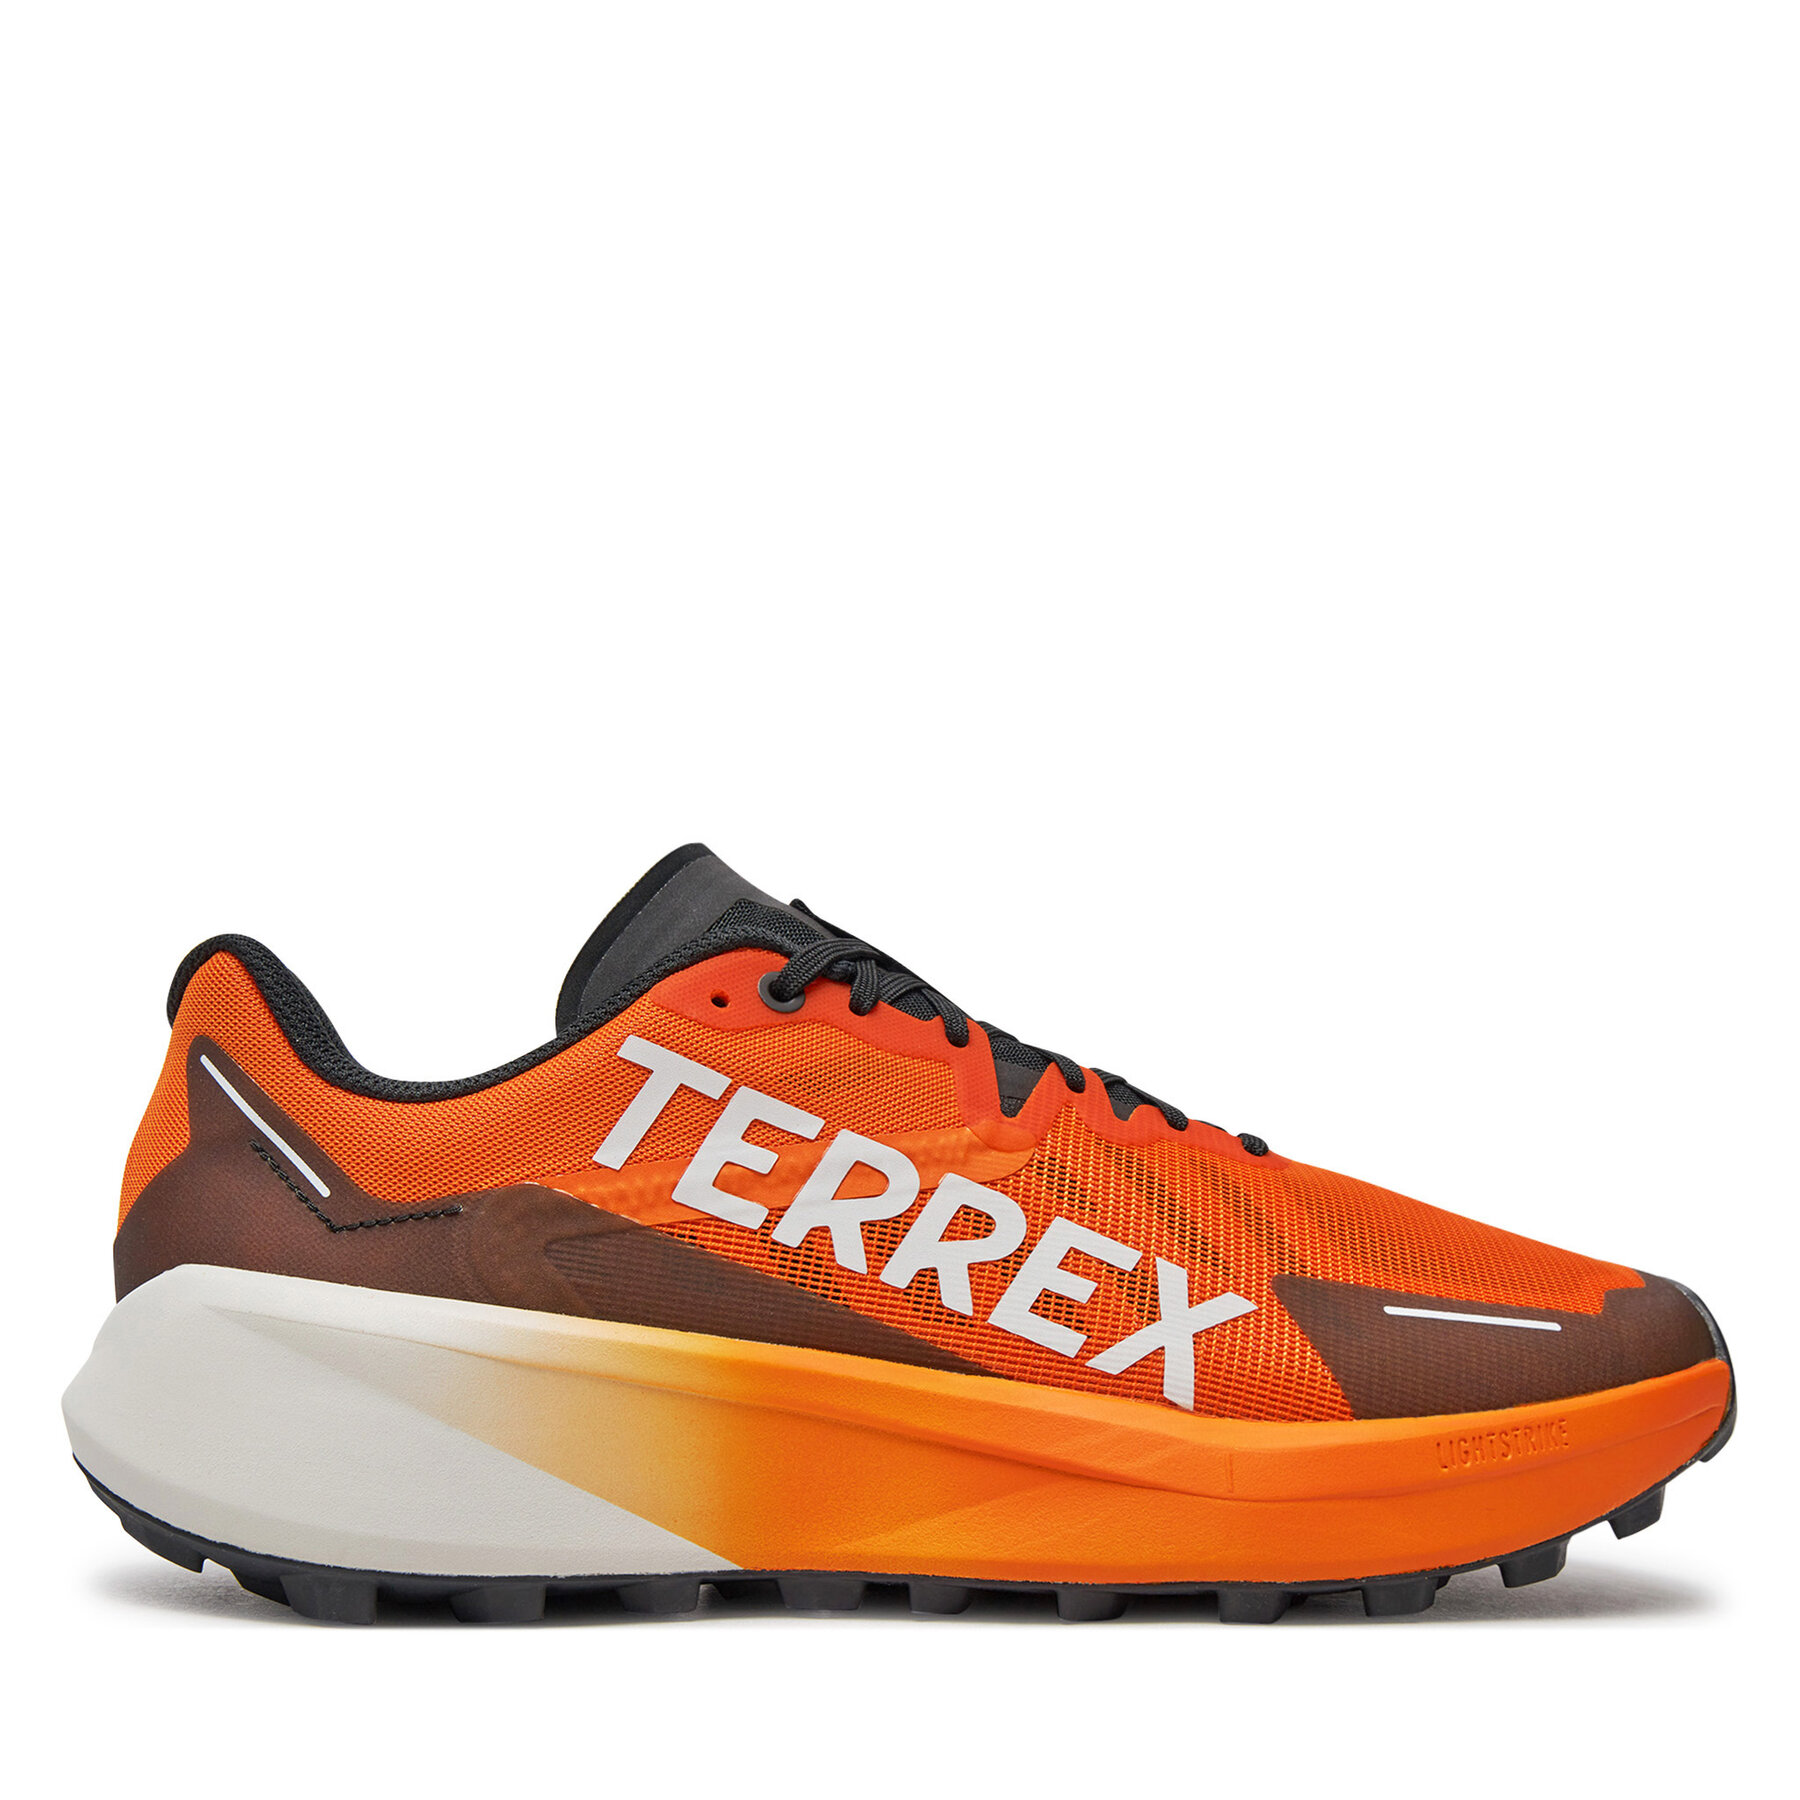 Laufschuhe adidas Terrex Agravic 3 IG8841 Orange von Adidas